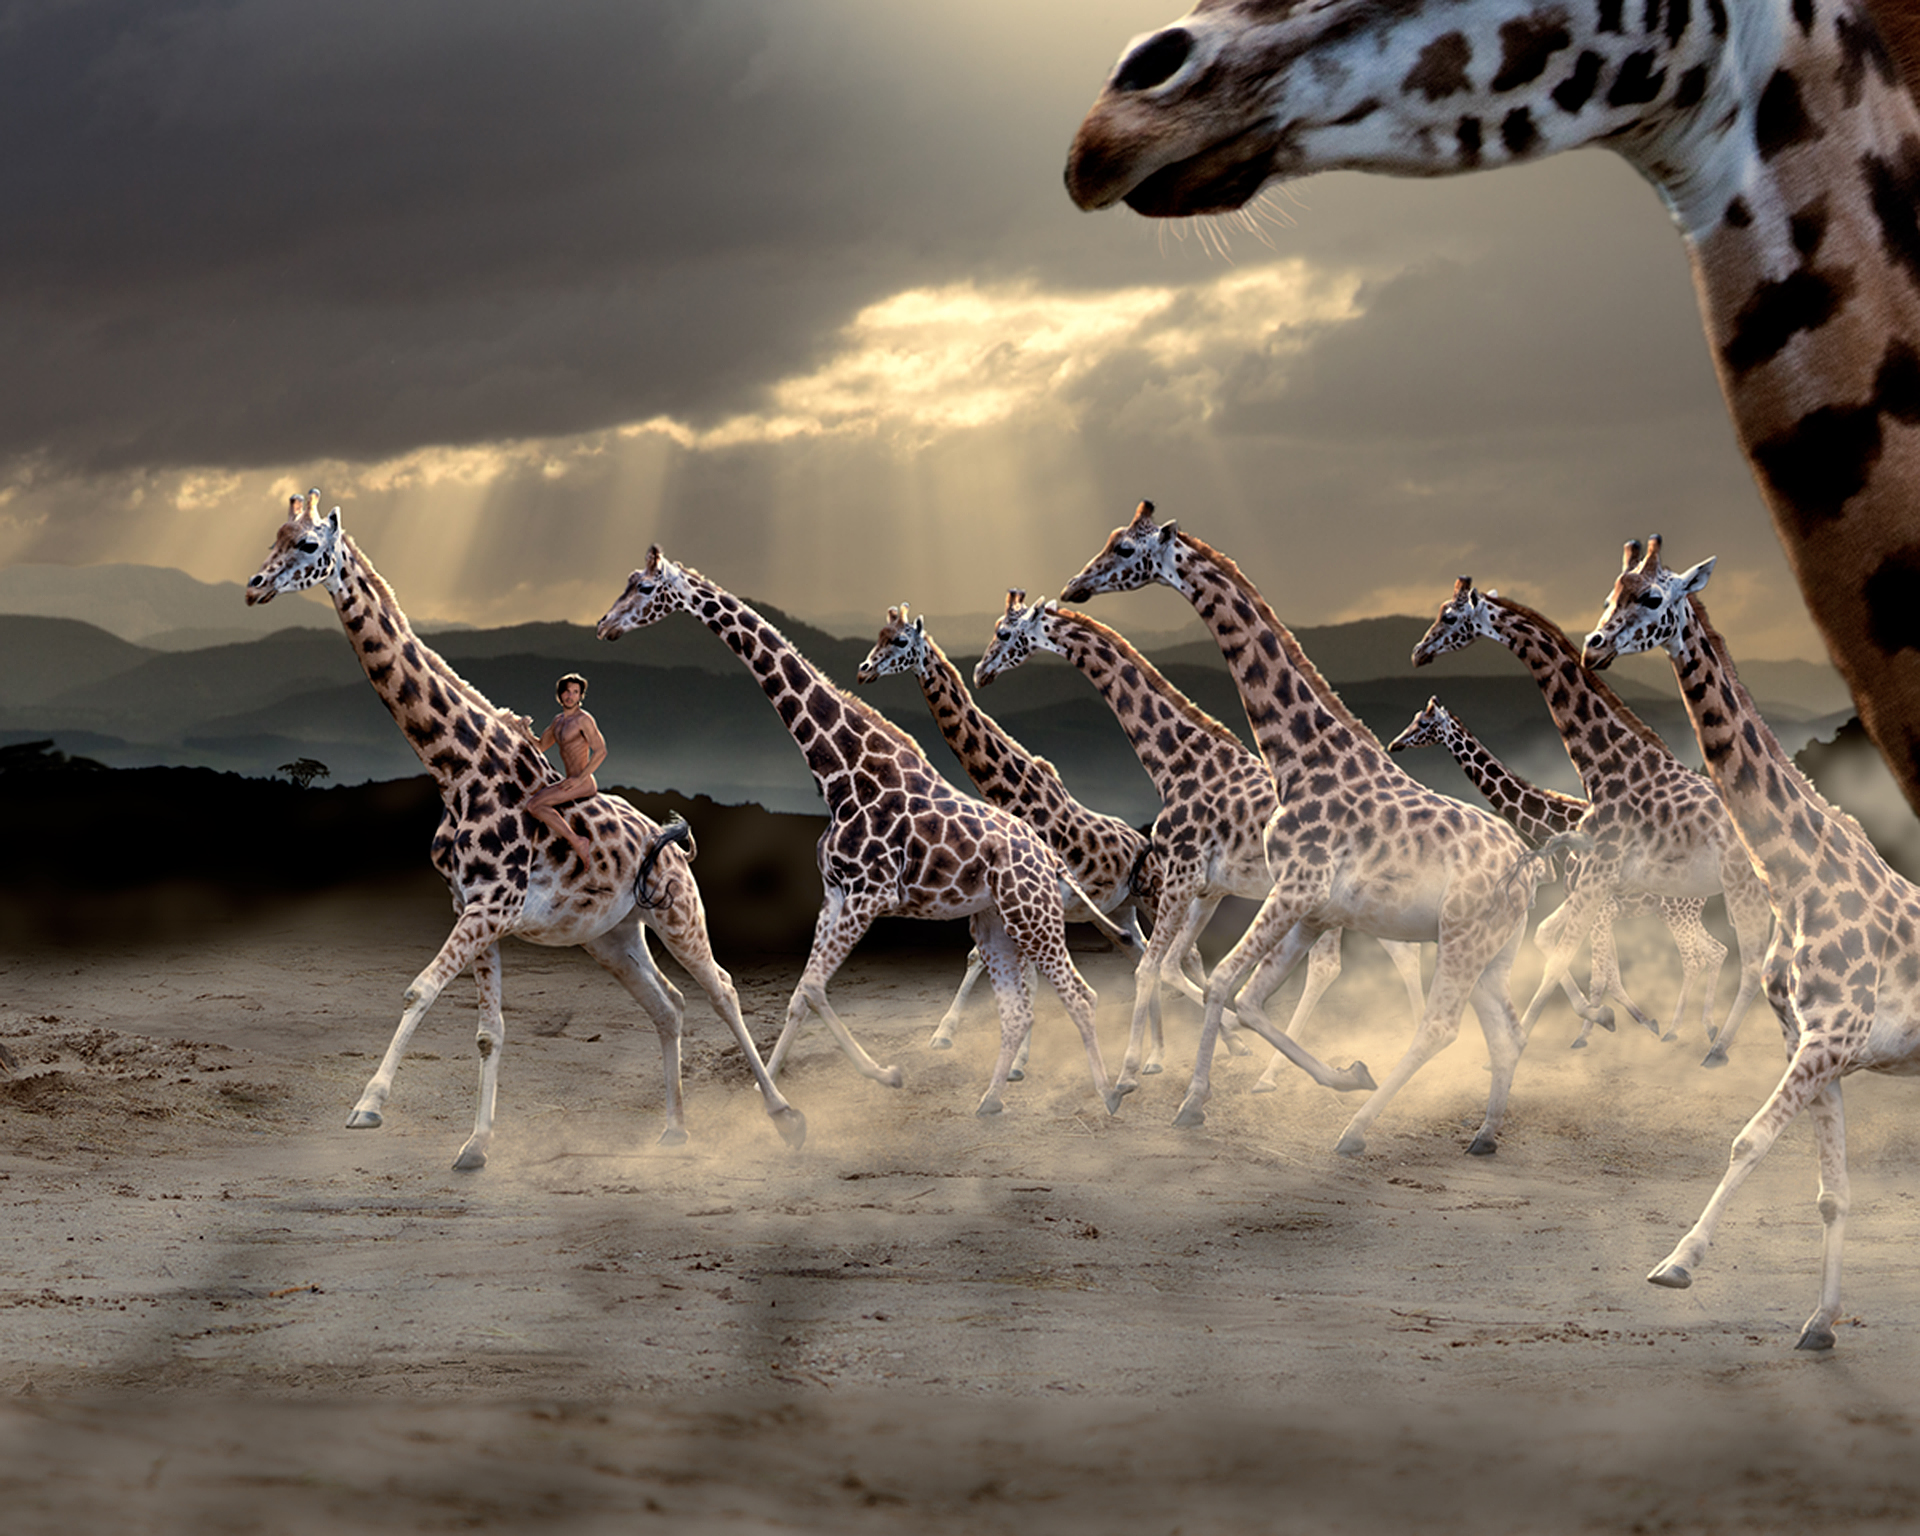 man riding giraffes